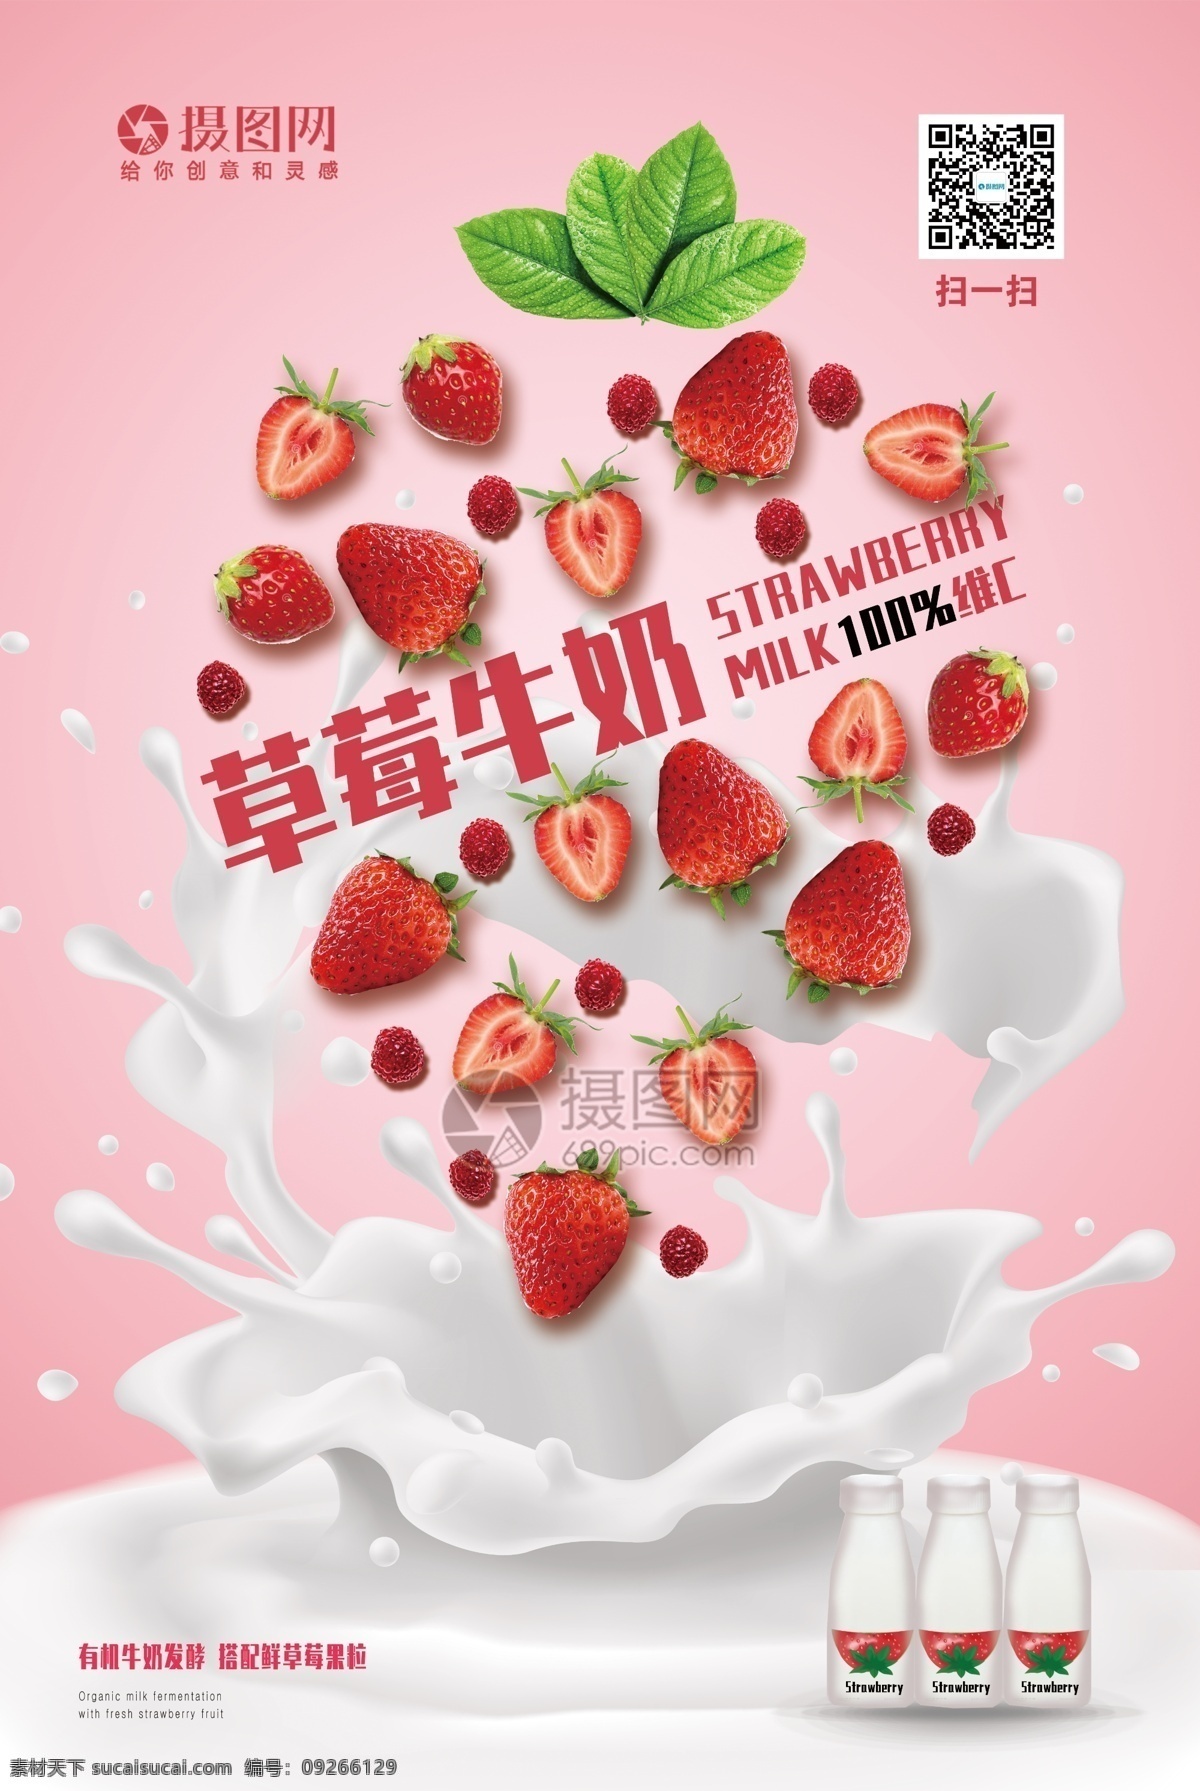 粉色 草莓 牛奶 饮料 简约 合成 宣传海报 牛奶海报 草莓牛奶 饮料海报 饮品 产品海报 水果牛奶 牛奶促销 促销海报